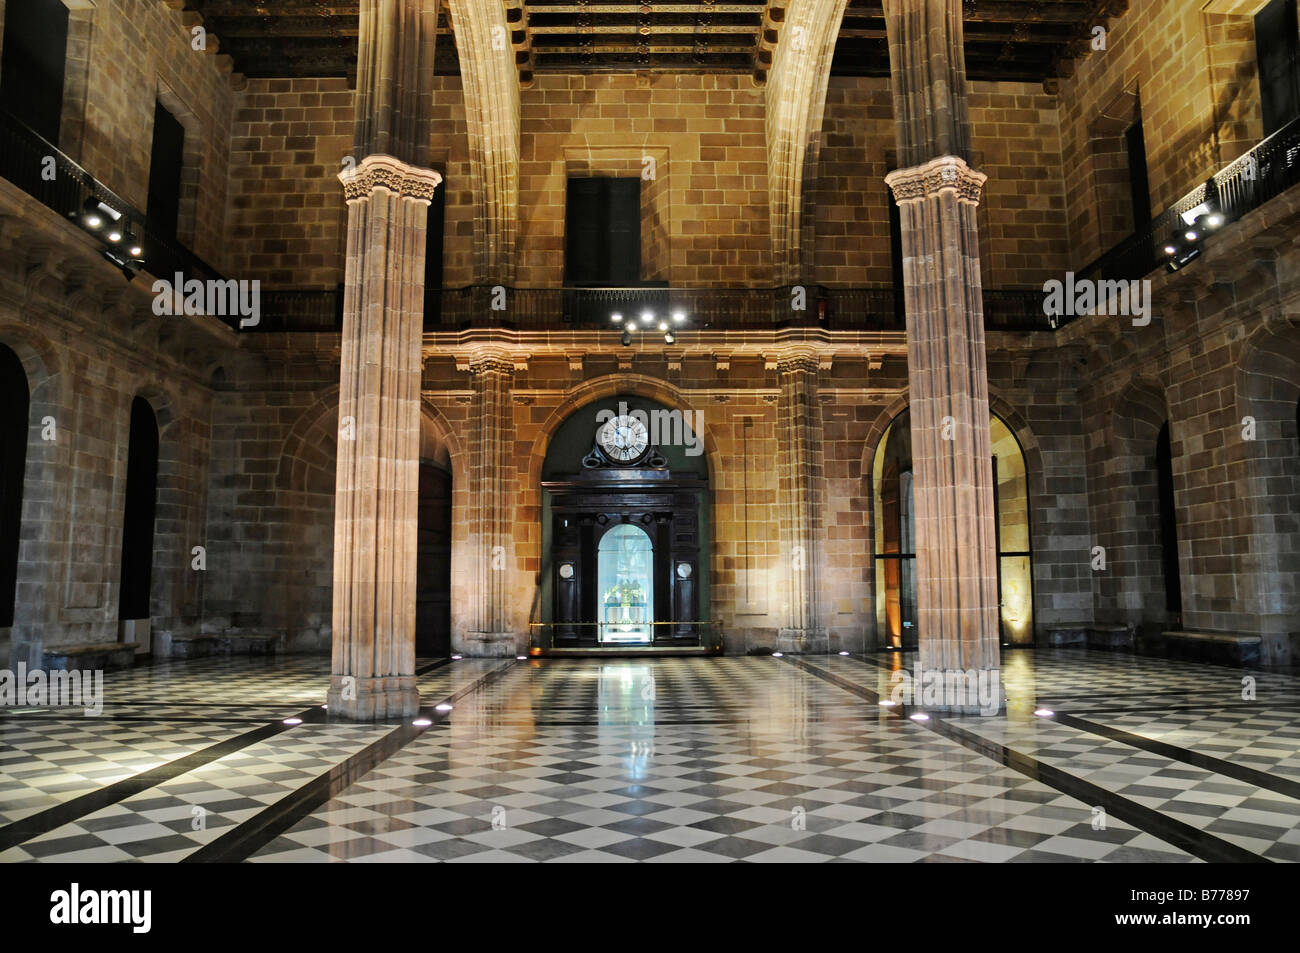 Eingangshalle, Salon, Palacio De La Llotja de Mar, ehemalige Börse, Barcelona, Katalonien, Spanien, Europa Stockfoto